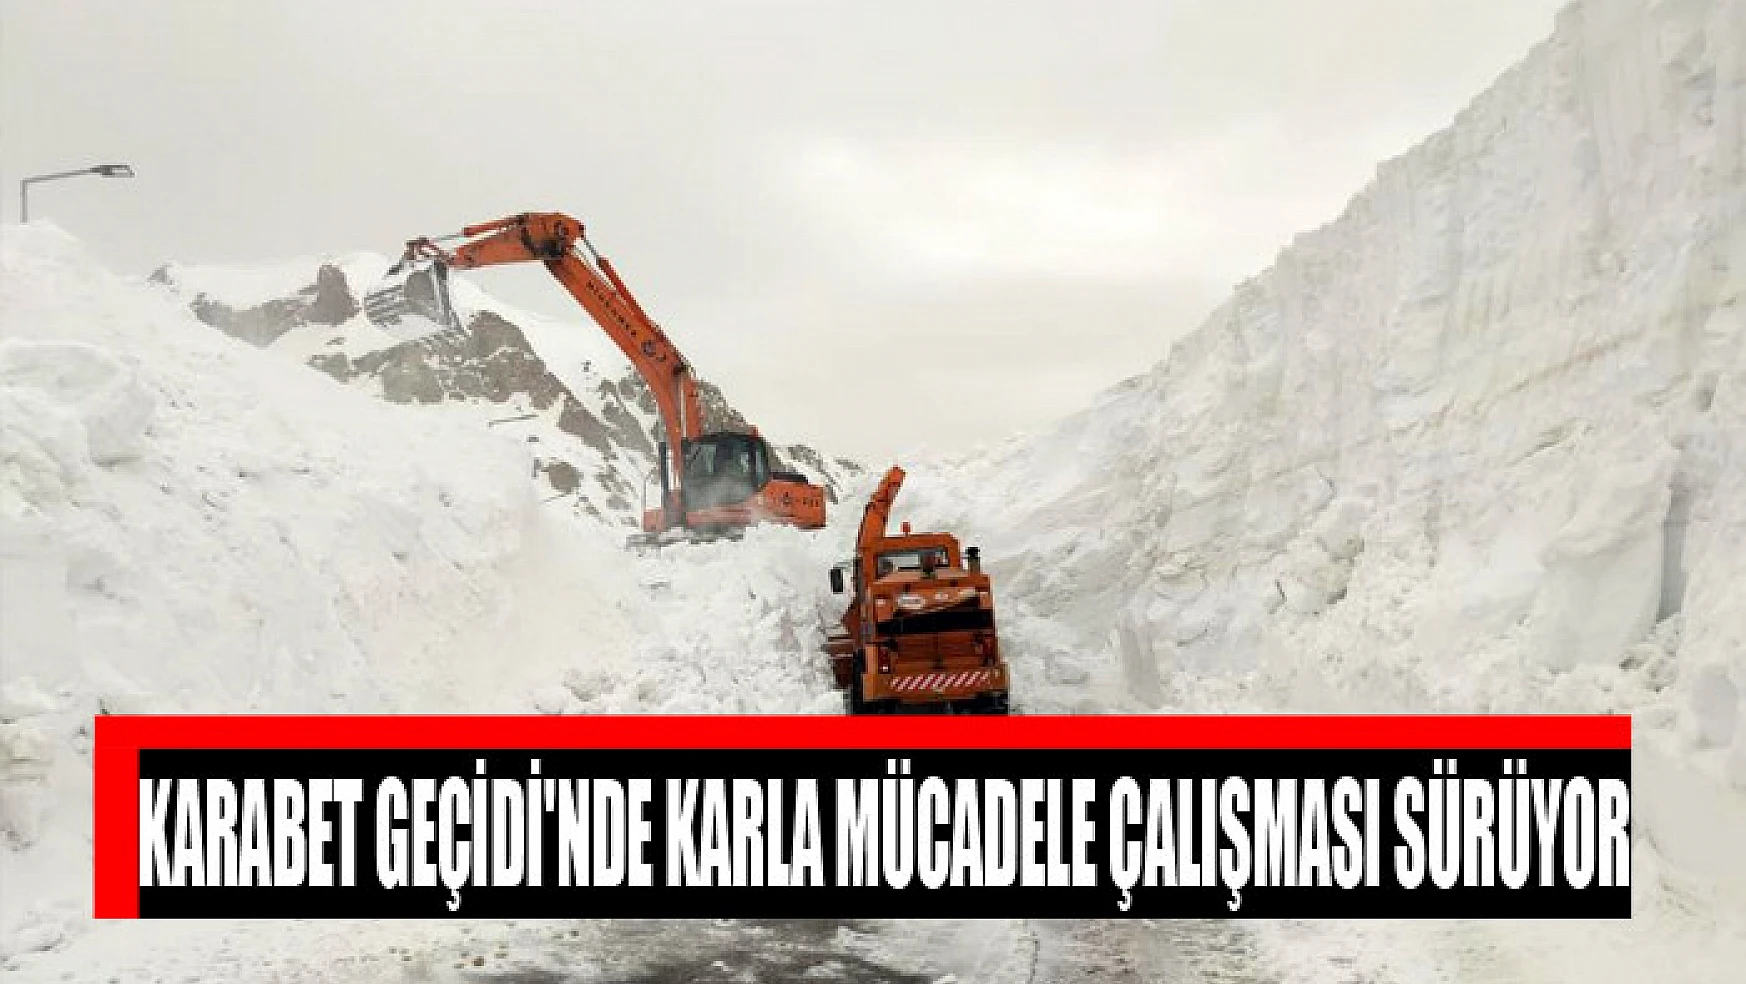 Karabet Geçidi'nde karla mücadele çalışması sürüyor